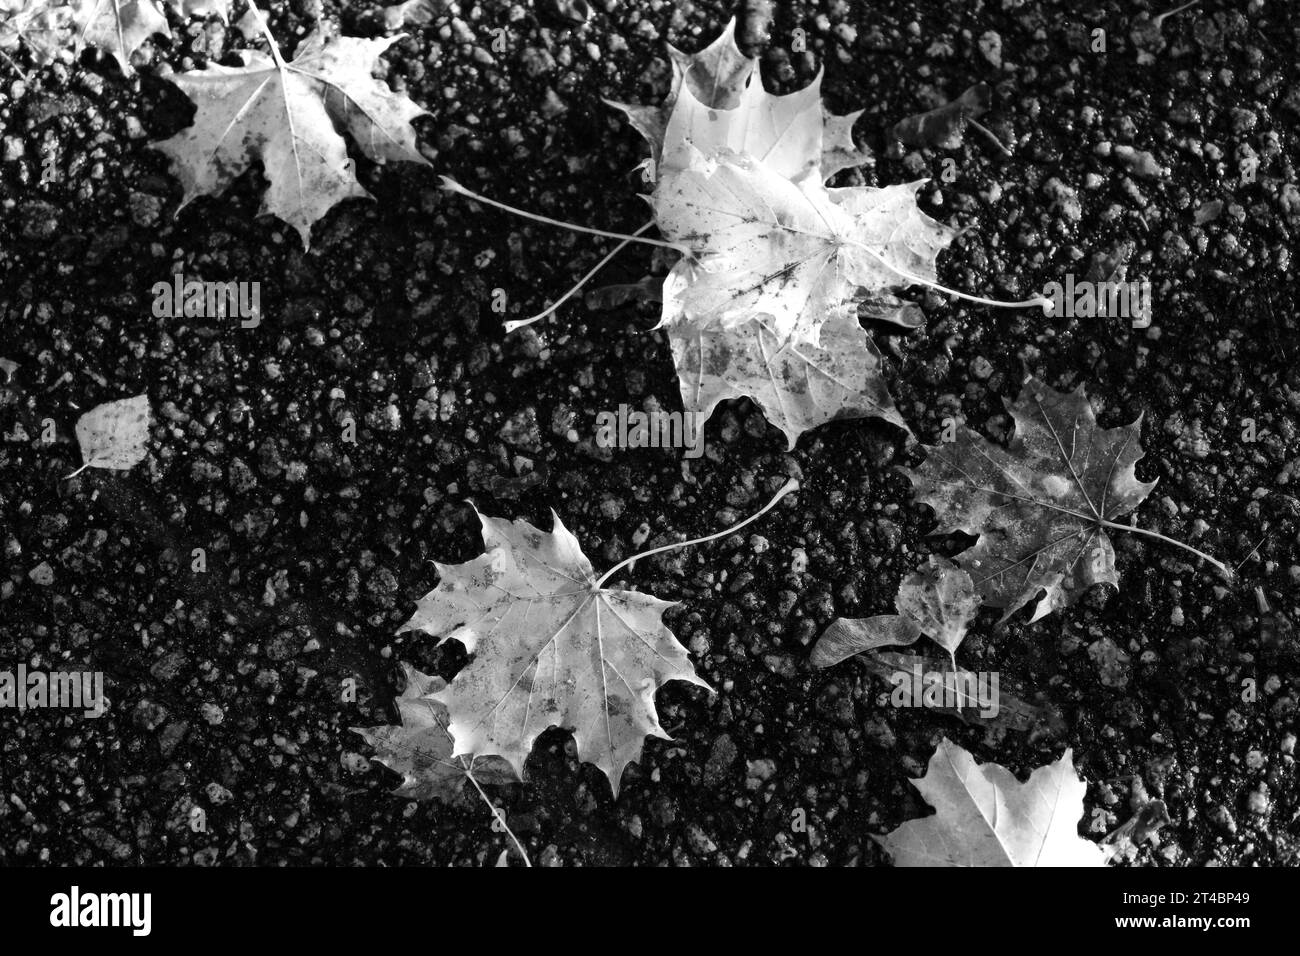 Fallen Maple leaves on asphalt in black and white. Stock Photo